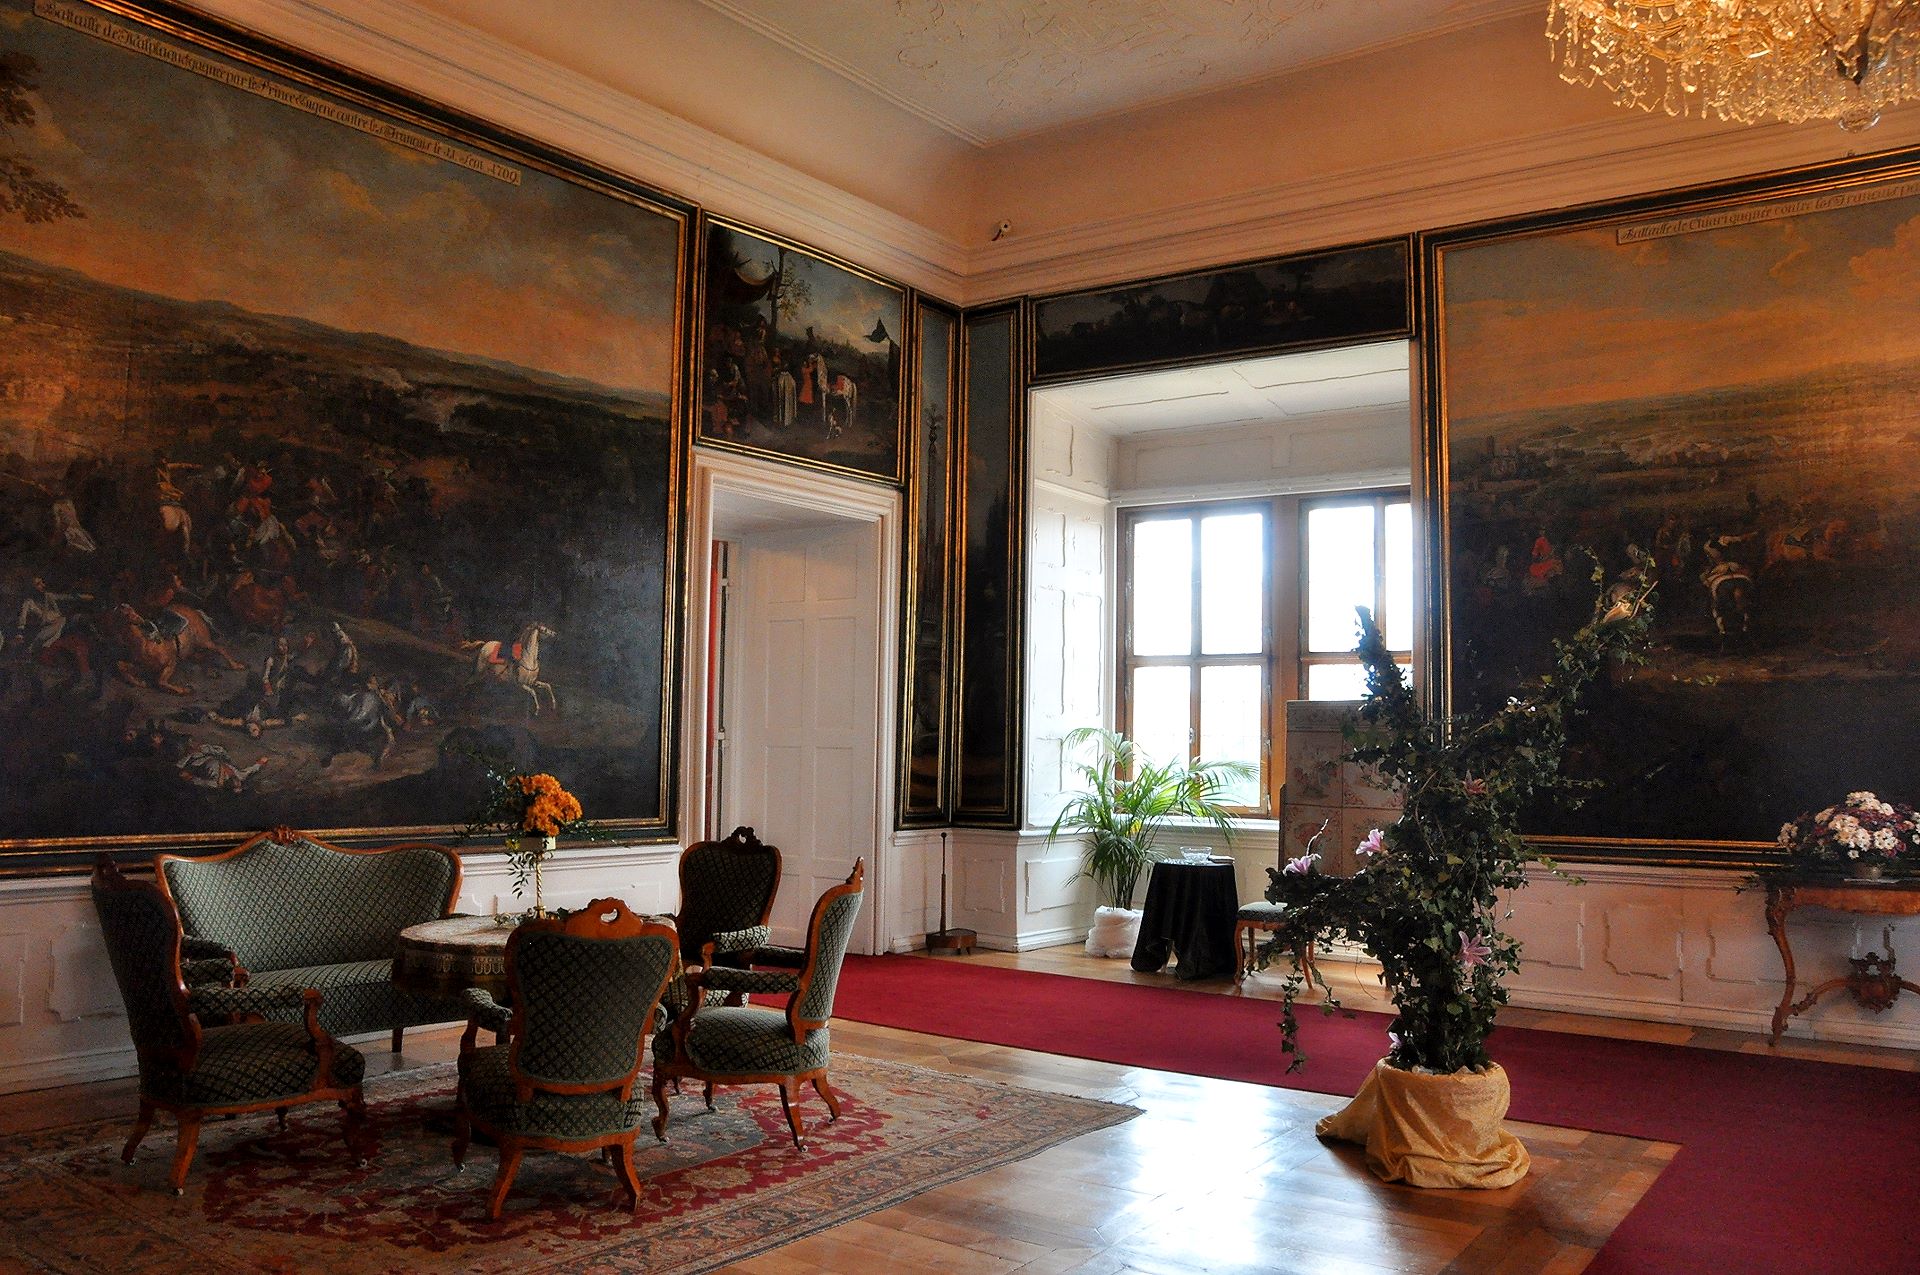 Nach den Gemälden, die die Erfolge des Feldherren Prinz Eugen von Savoyen rühmen, wird dieser Saal Schlachtensaal genannt. Verwendet wurde er als Spielzimmer, davon zeugt auch der russische Billardtisch.